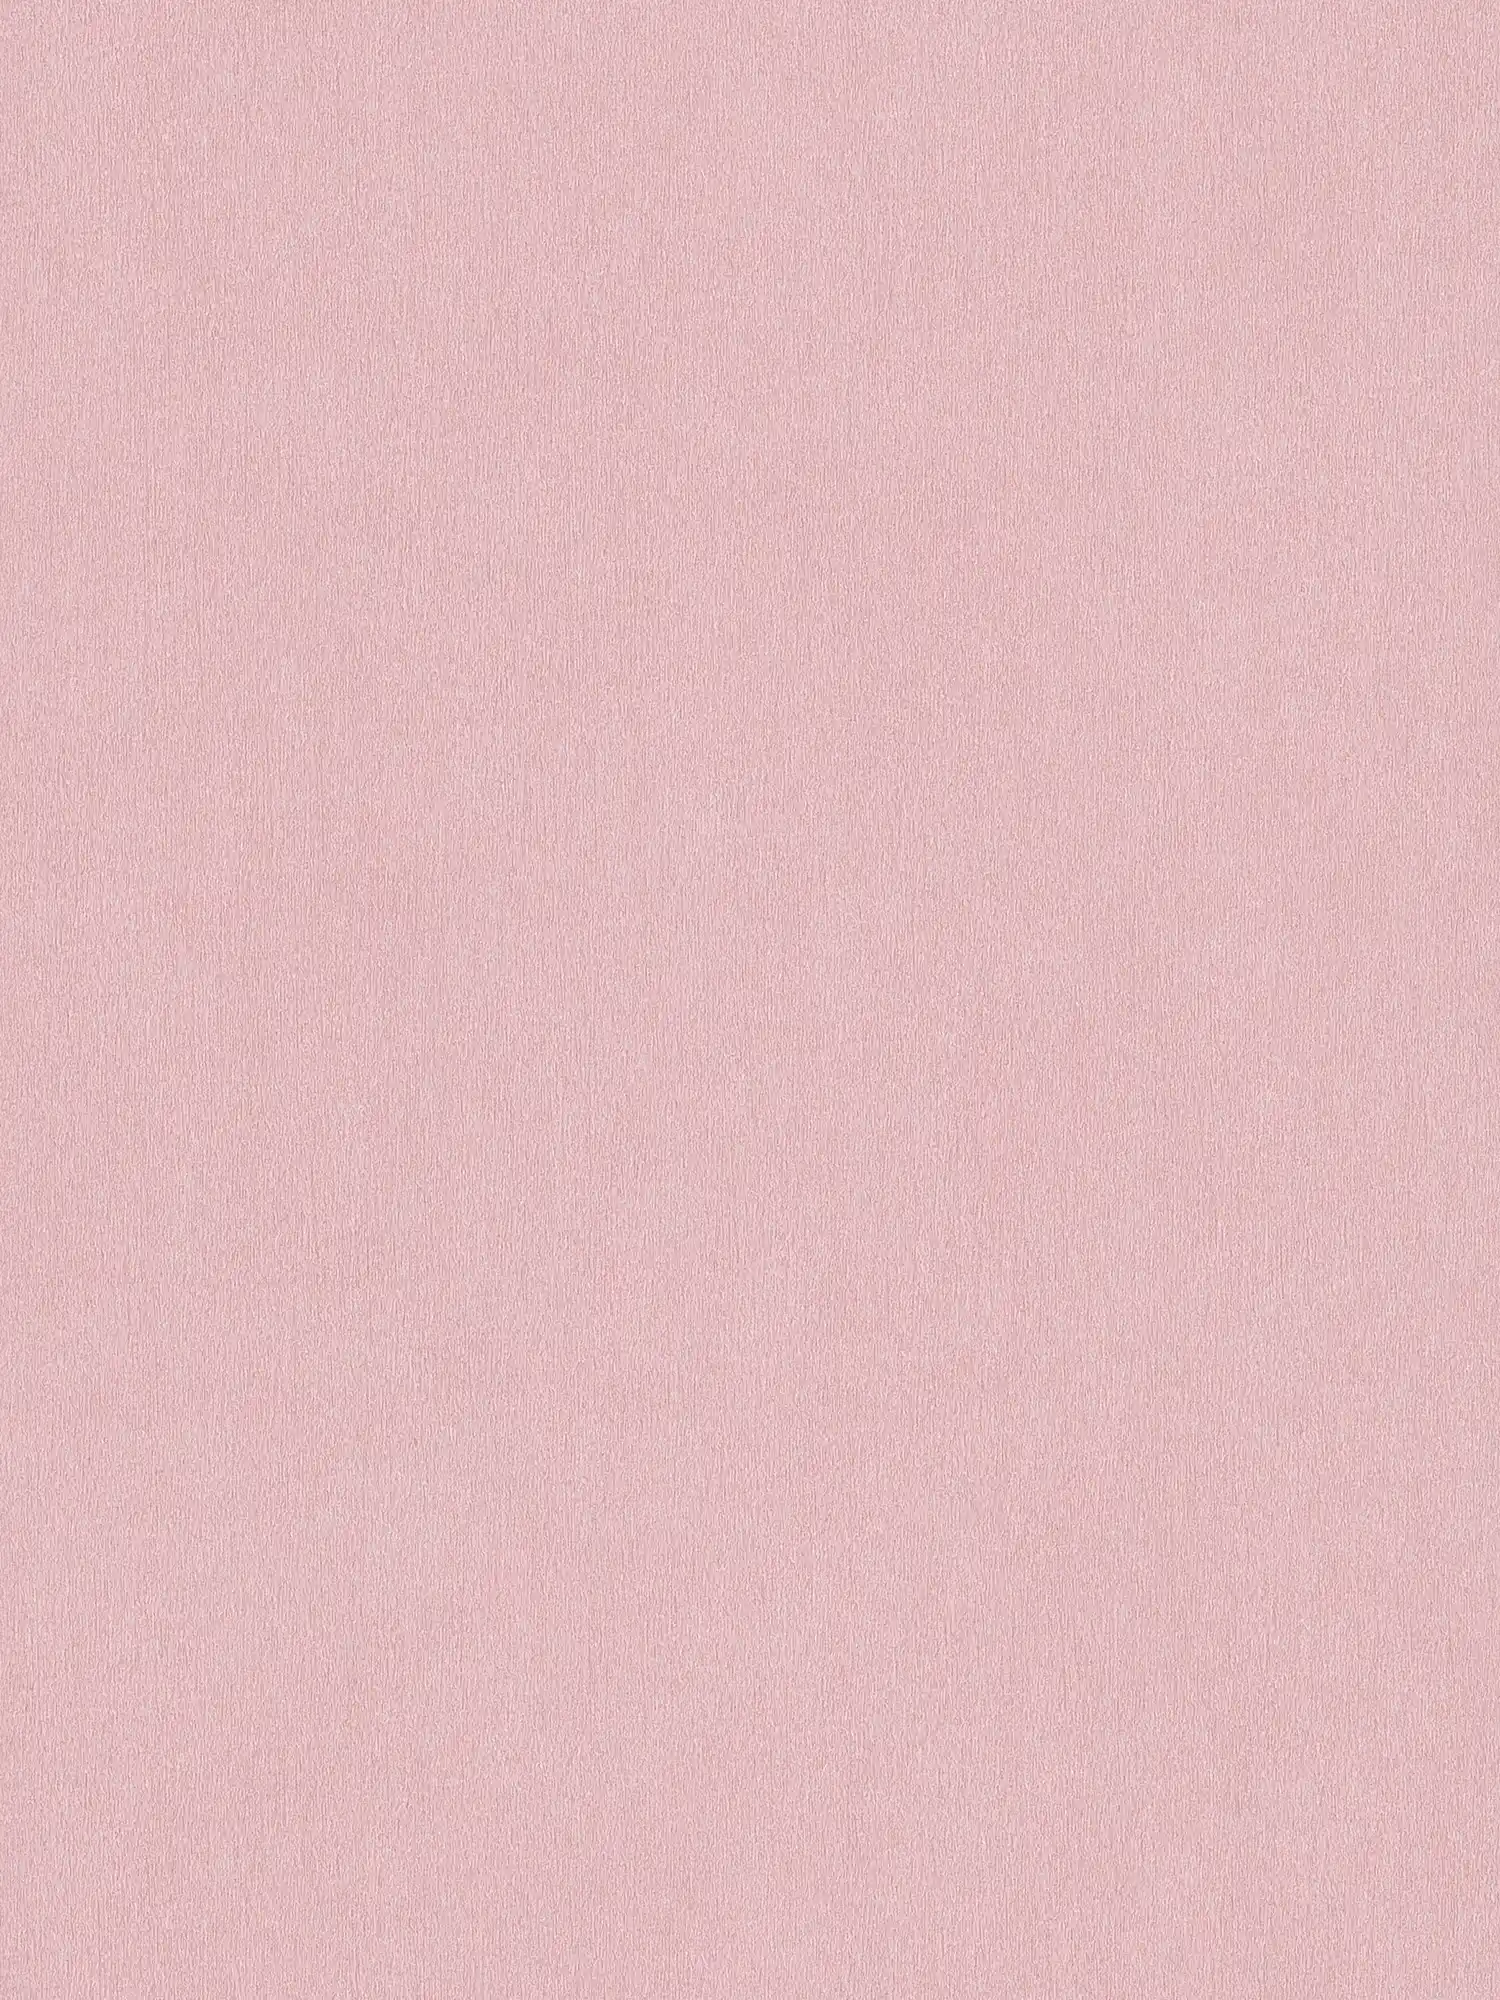 Papier peint rose uni avec hachures de couleur
